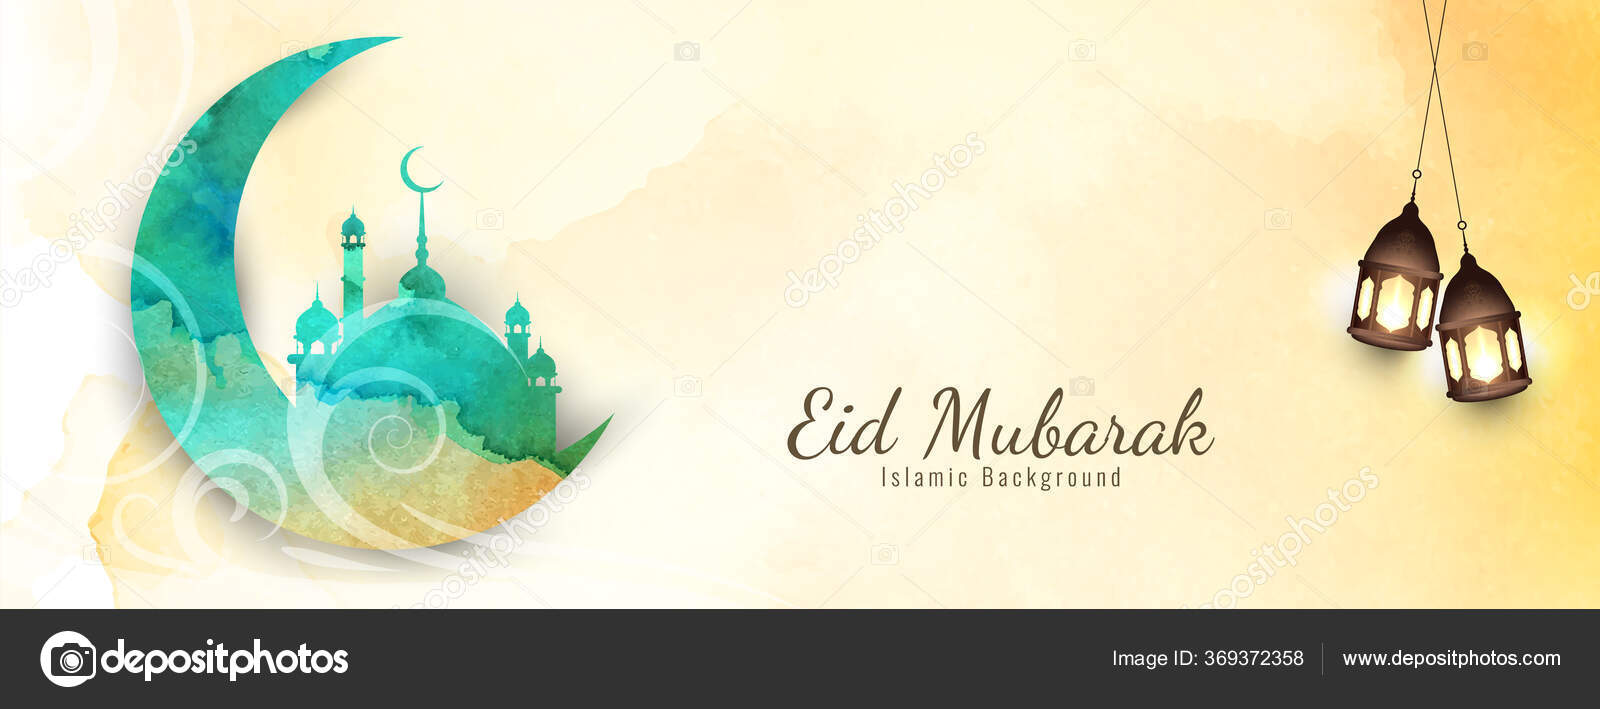 Hãy chiêm ngưỡng thiết kế độc đáo của bảng rực rỡ \'Eid Mubarak\' này và cảm nhận một không khí lễ hội sôi động đến từ ngày hội này. Với những chi tiết tinh tế và màu sắc hài hòa, bảng đảm bảo sẽ thu hút mọi ánh nhìn và mang lại cho bạn sự vui vẻ khi nhìn vào nó. 